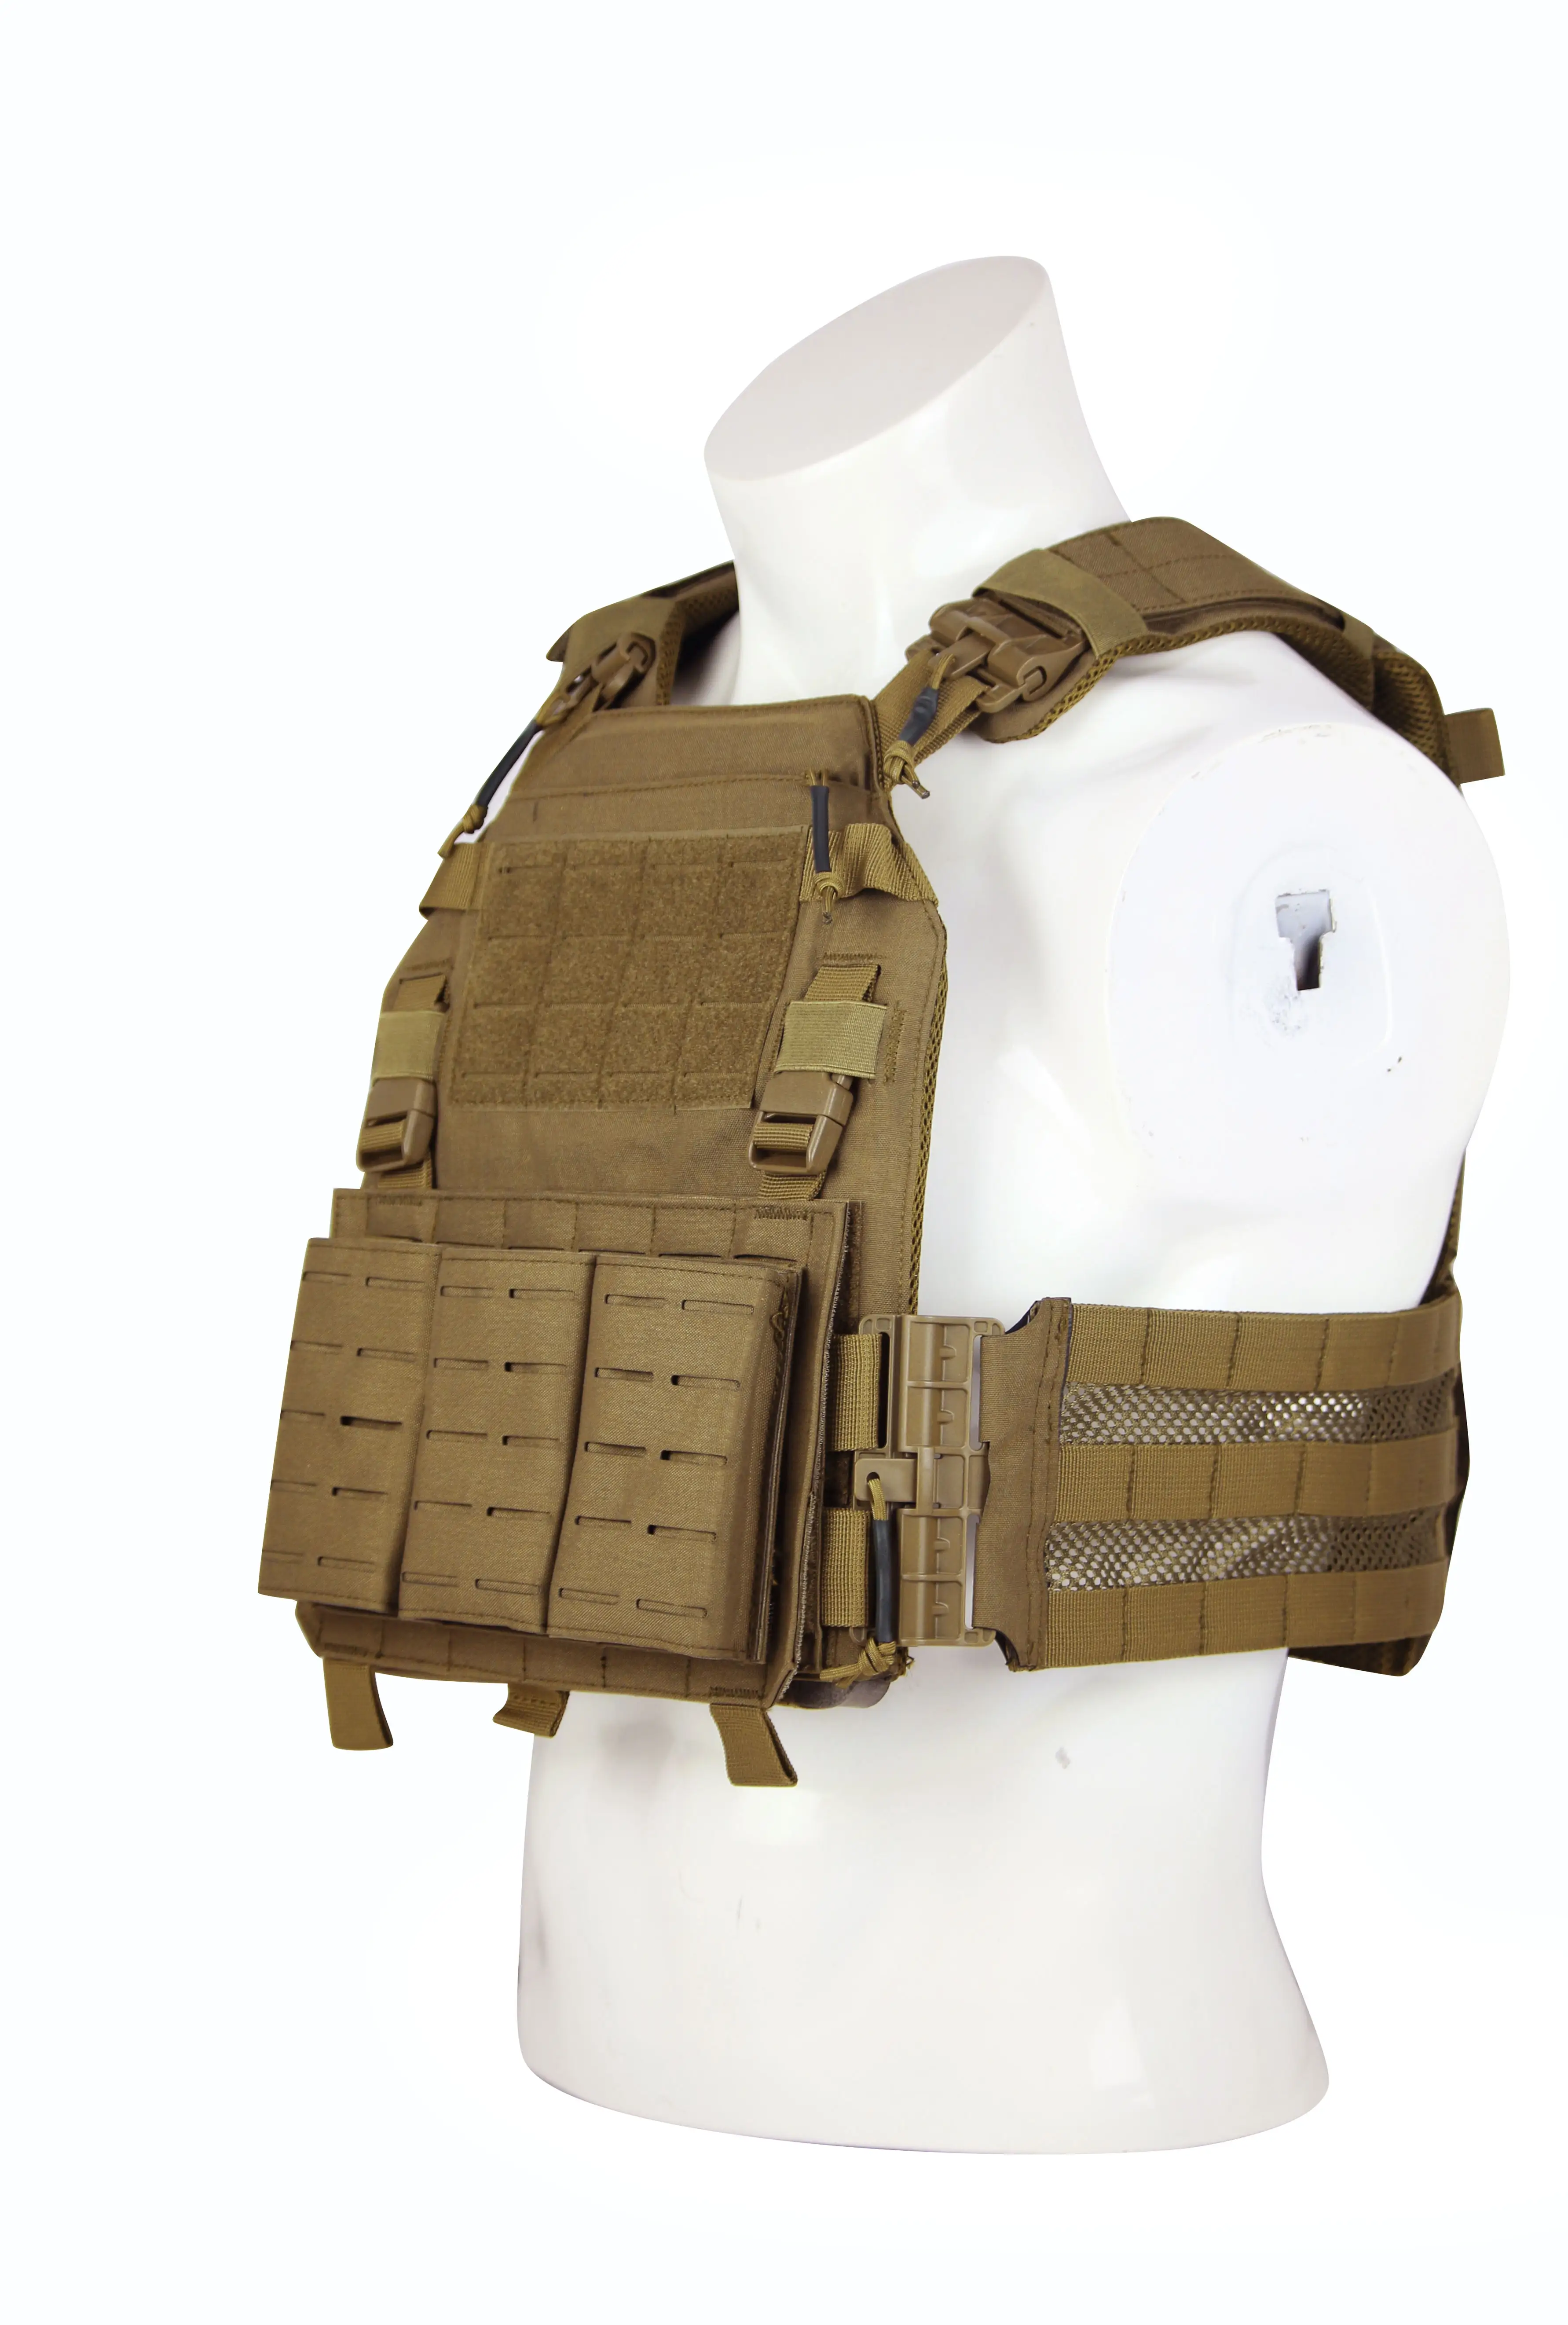 Explosieve Modellen Od Plaat Drager Safrty Vest Buiten Activiteiten Duurzaam Tactisch Vest